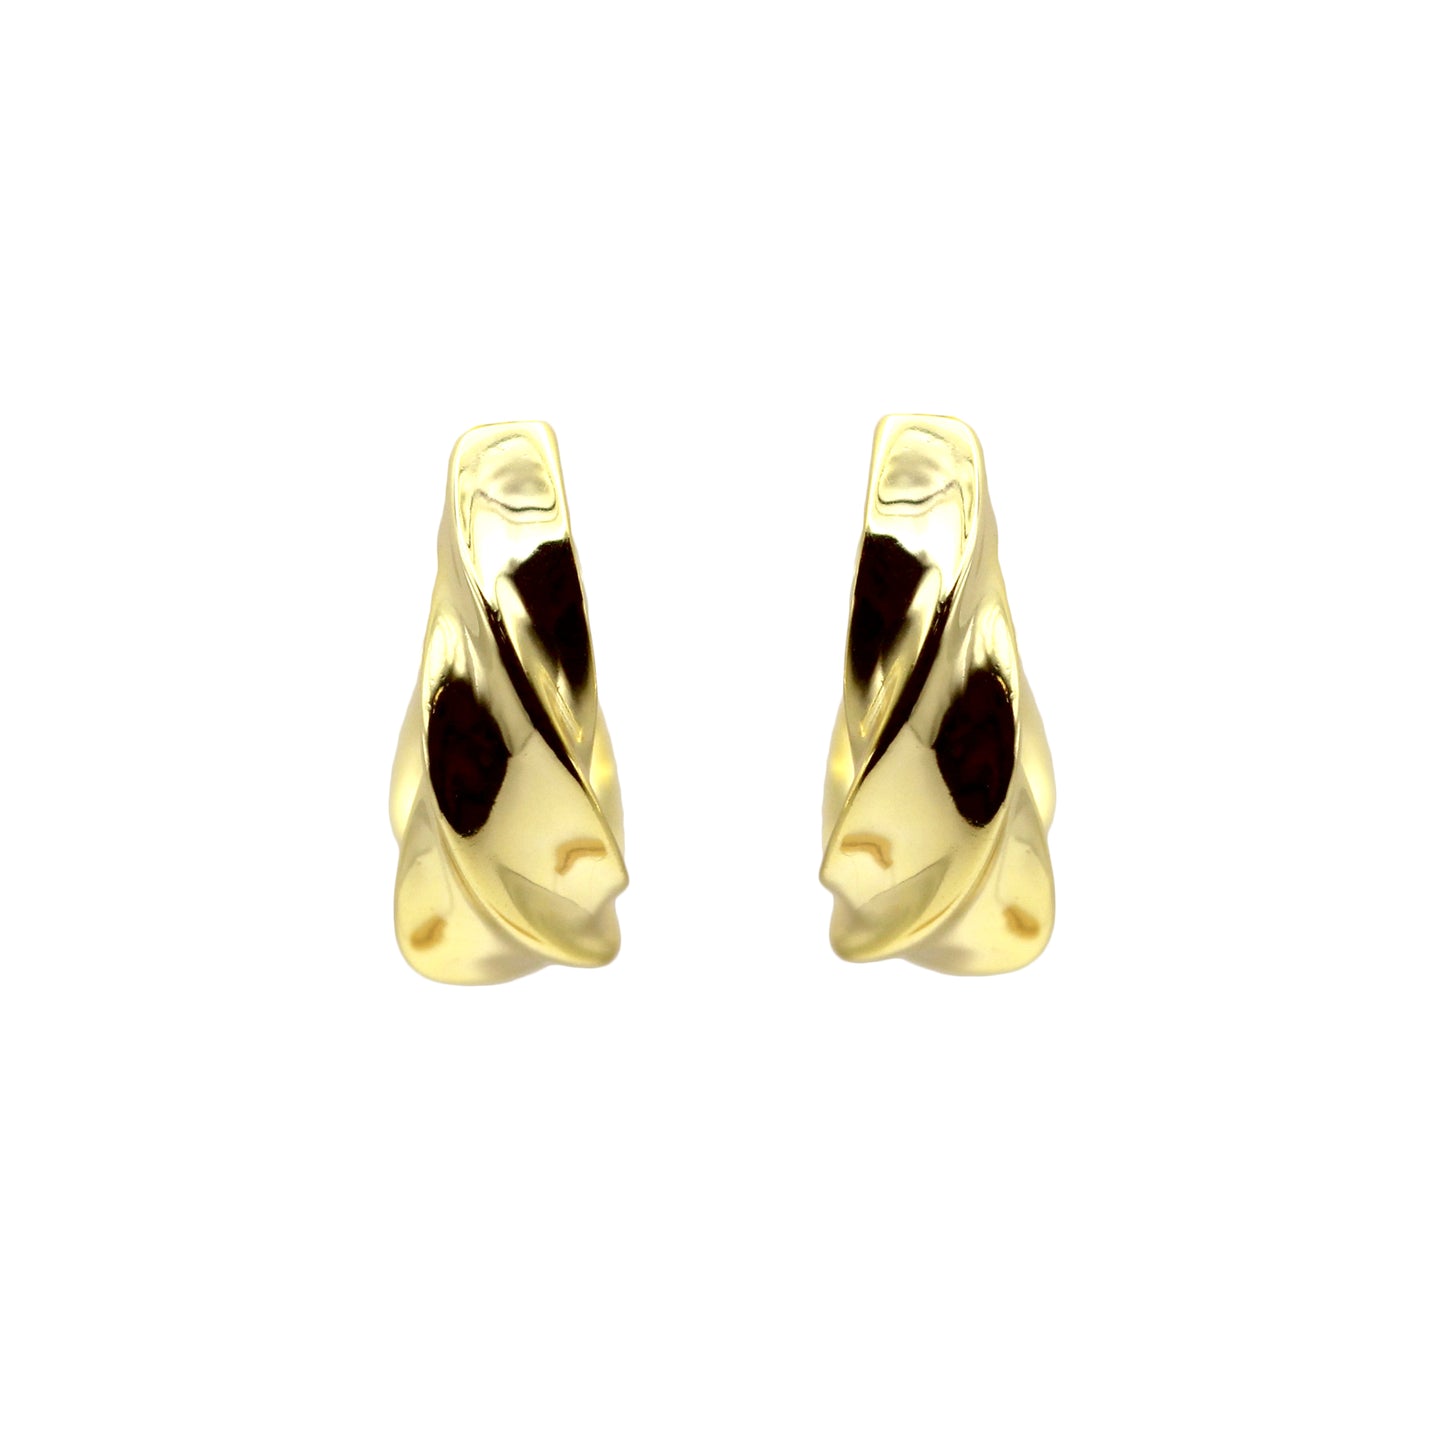 Handmade Twist Gold Hoop Earrings